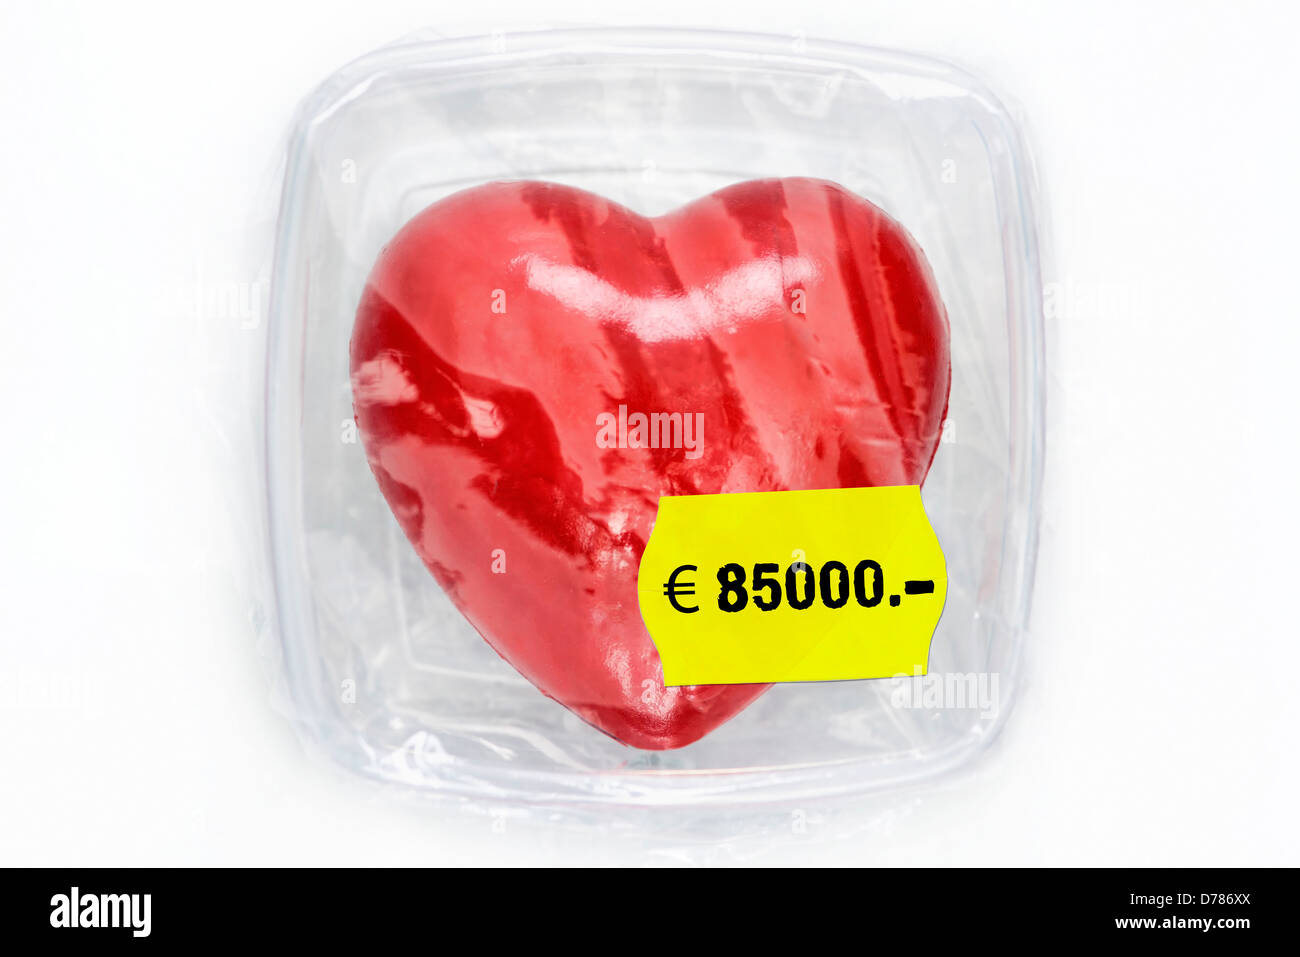 Corazón mantenga fresca en caja con etiqueta premio simbólico, foto de la donación de órganos Foto de stock